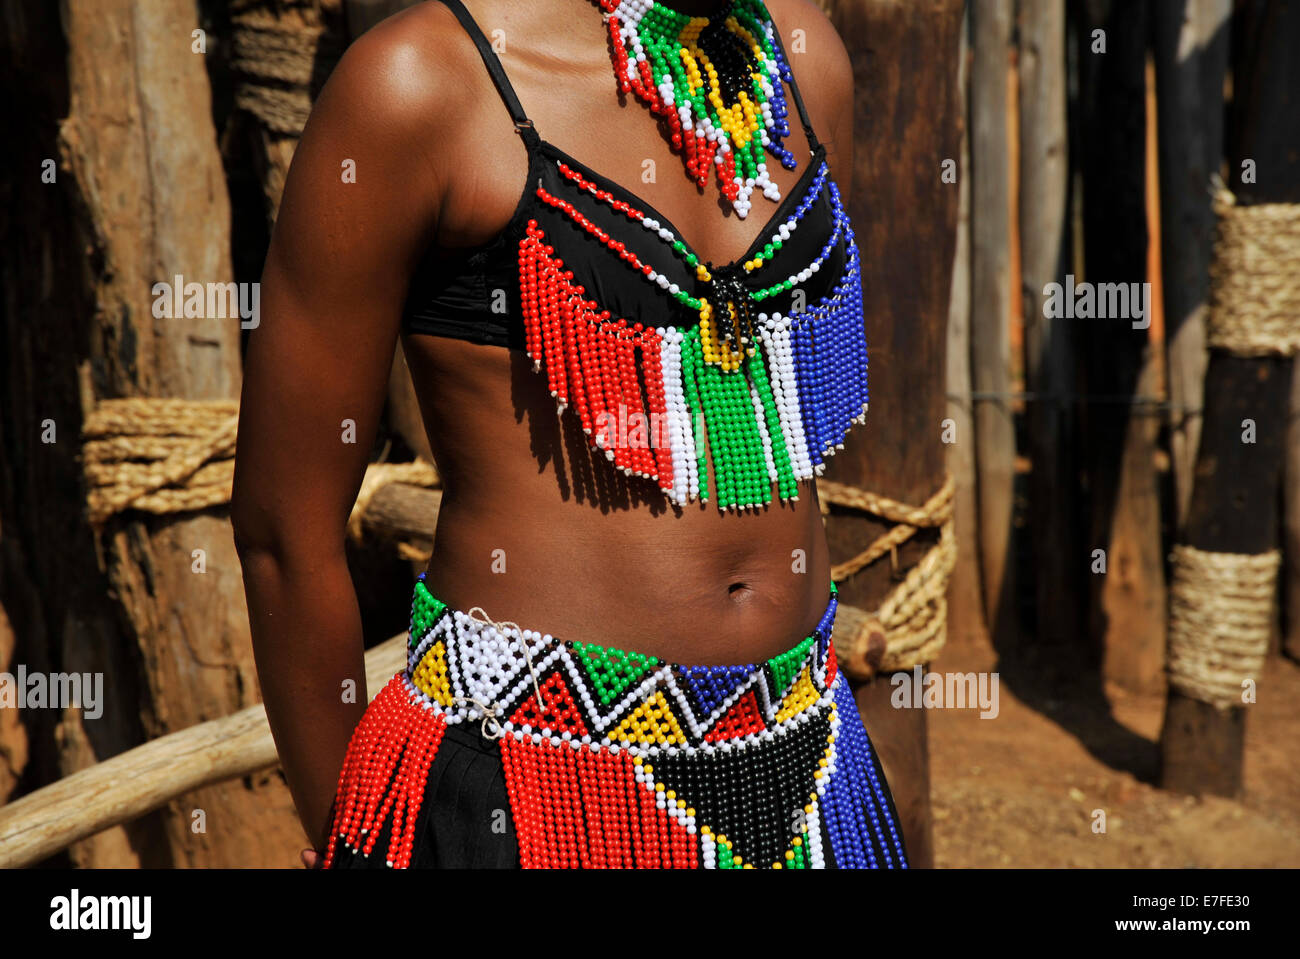 Personnes, culture, corps de la femme, KwaZulu-Natal, Afrique du Sud, Robe traditionnelle colorée ornée de perles, jeune fille Zulu, village à thème Shakaland, vêtements, ethnie Banque D'Images